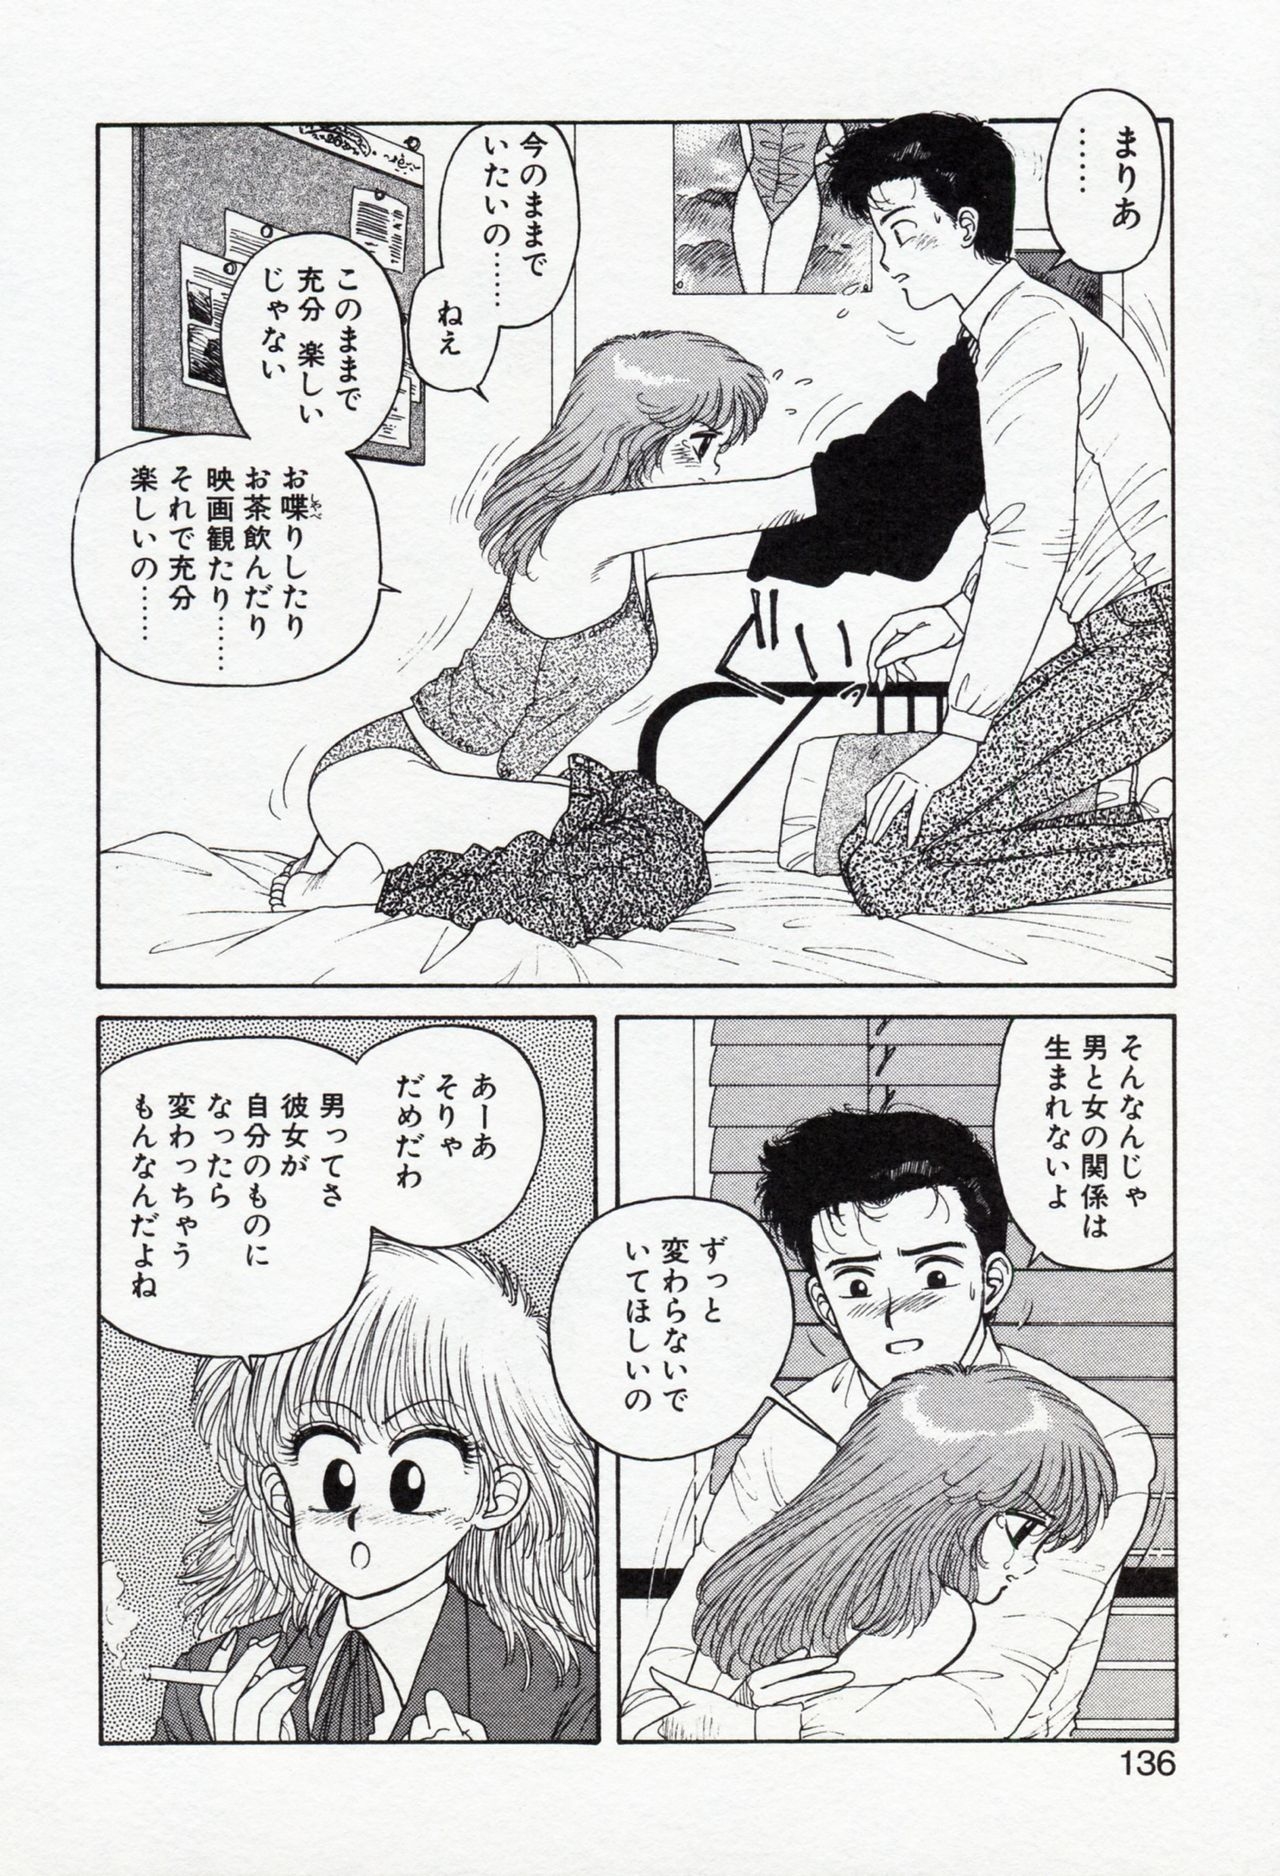 [Yui Toshiki] Misty Girl 135